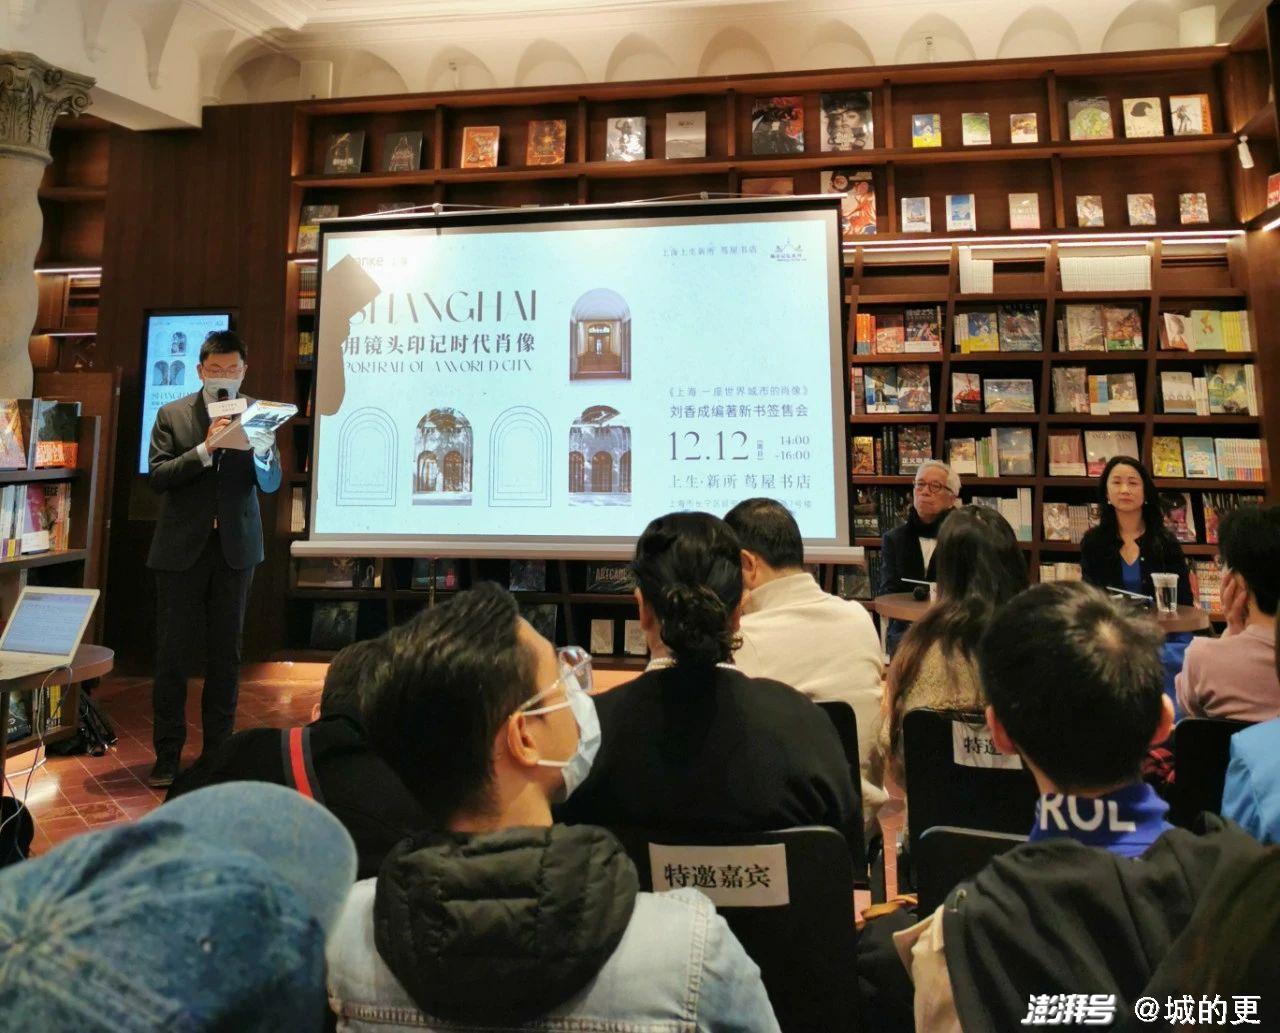 上海首家茑屋书店:欢迎来到big book world